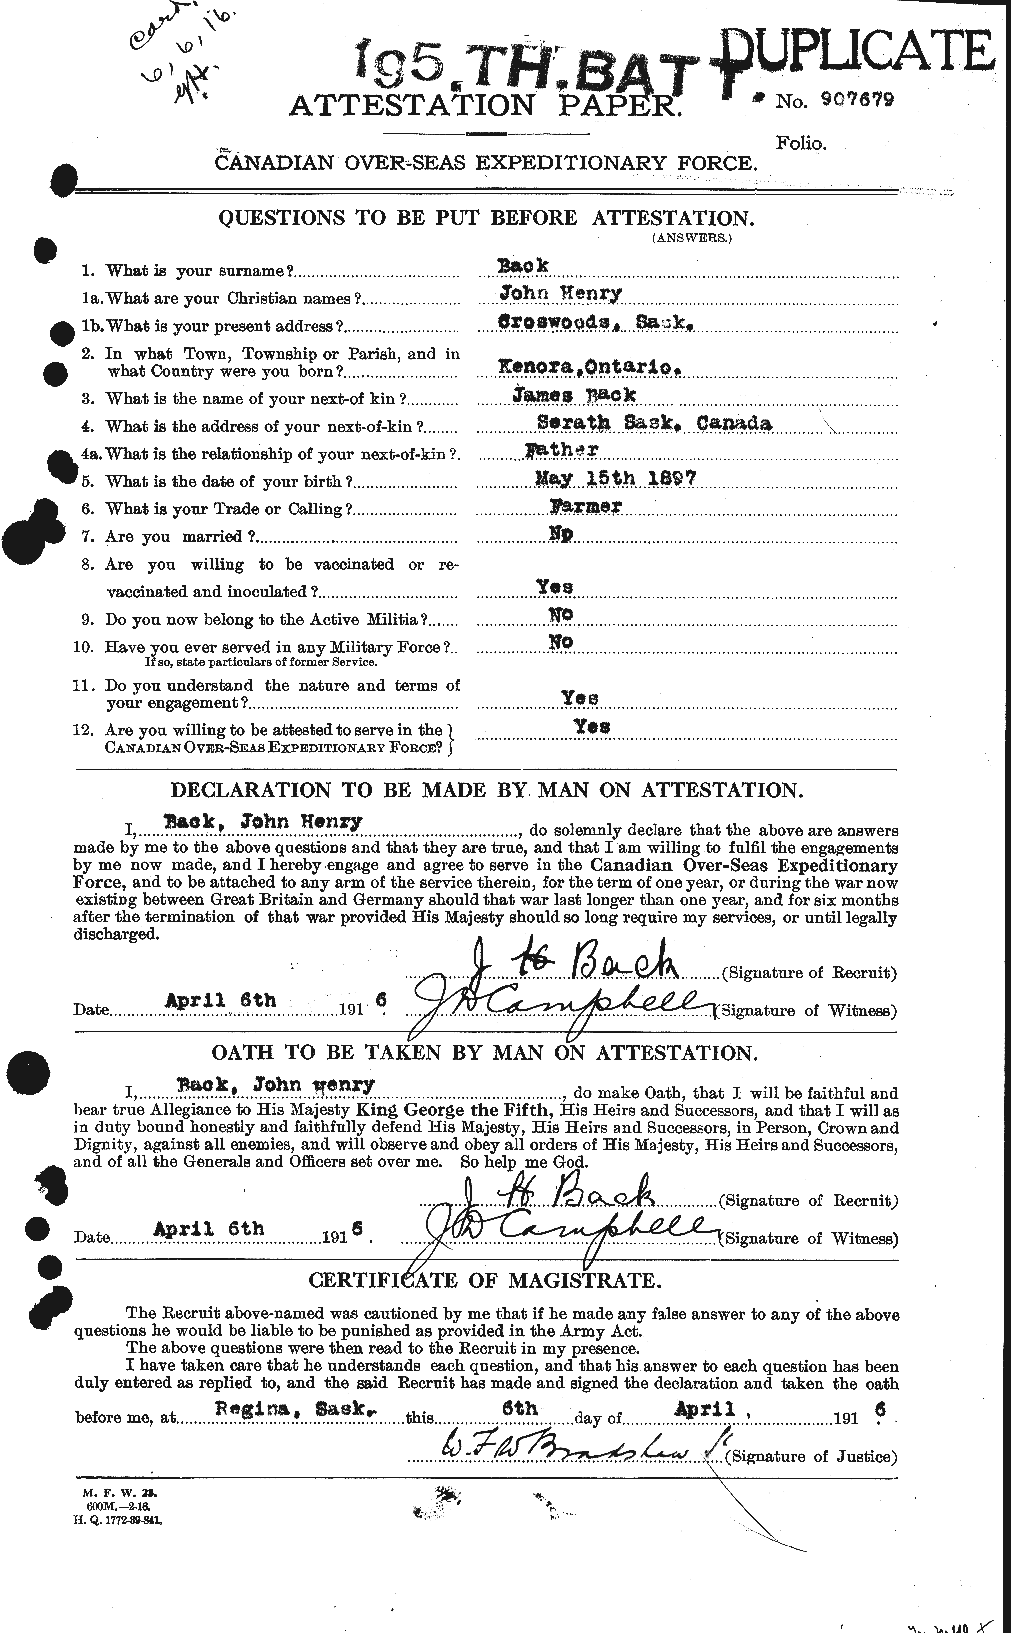 Dossiers du Personnel de la Première Guerre mondiale - CEC 218003a